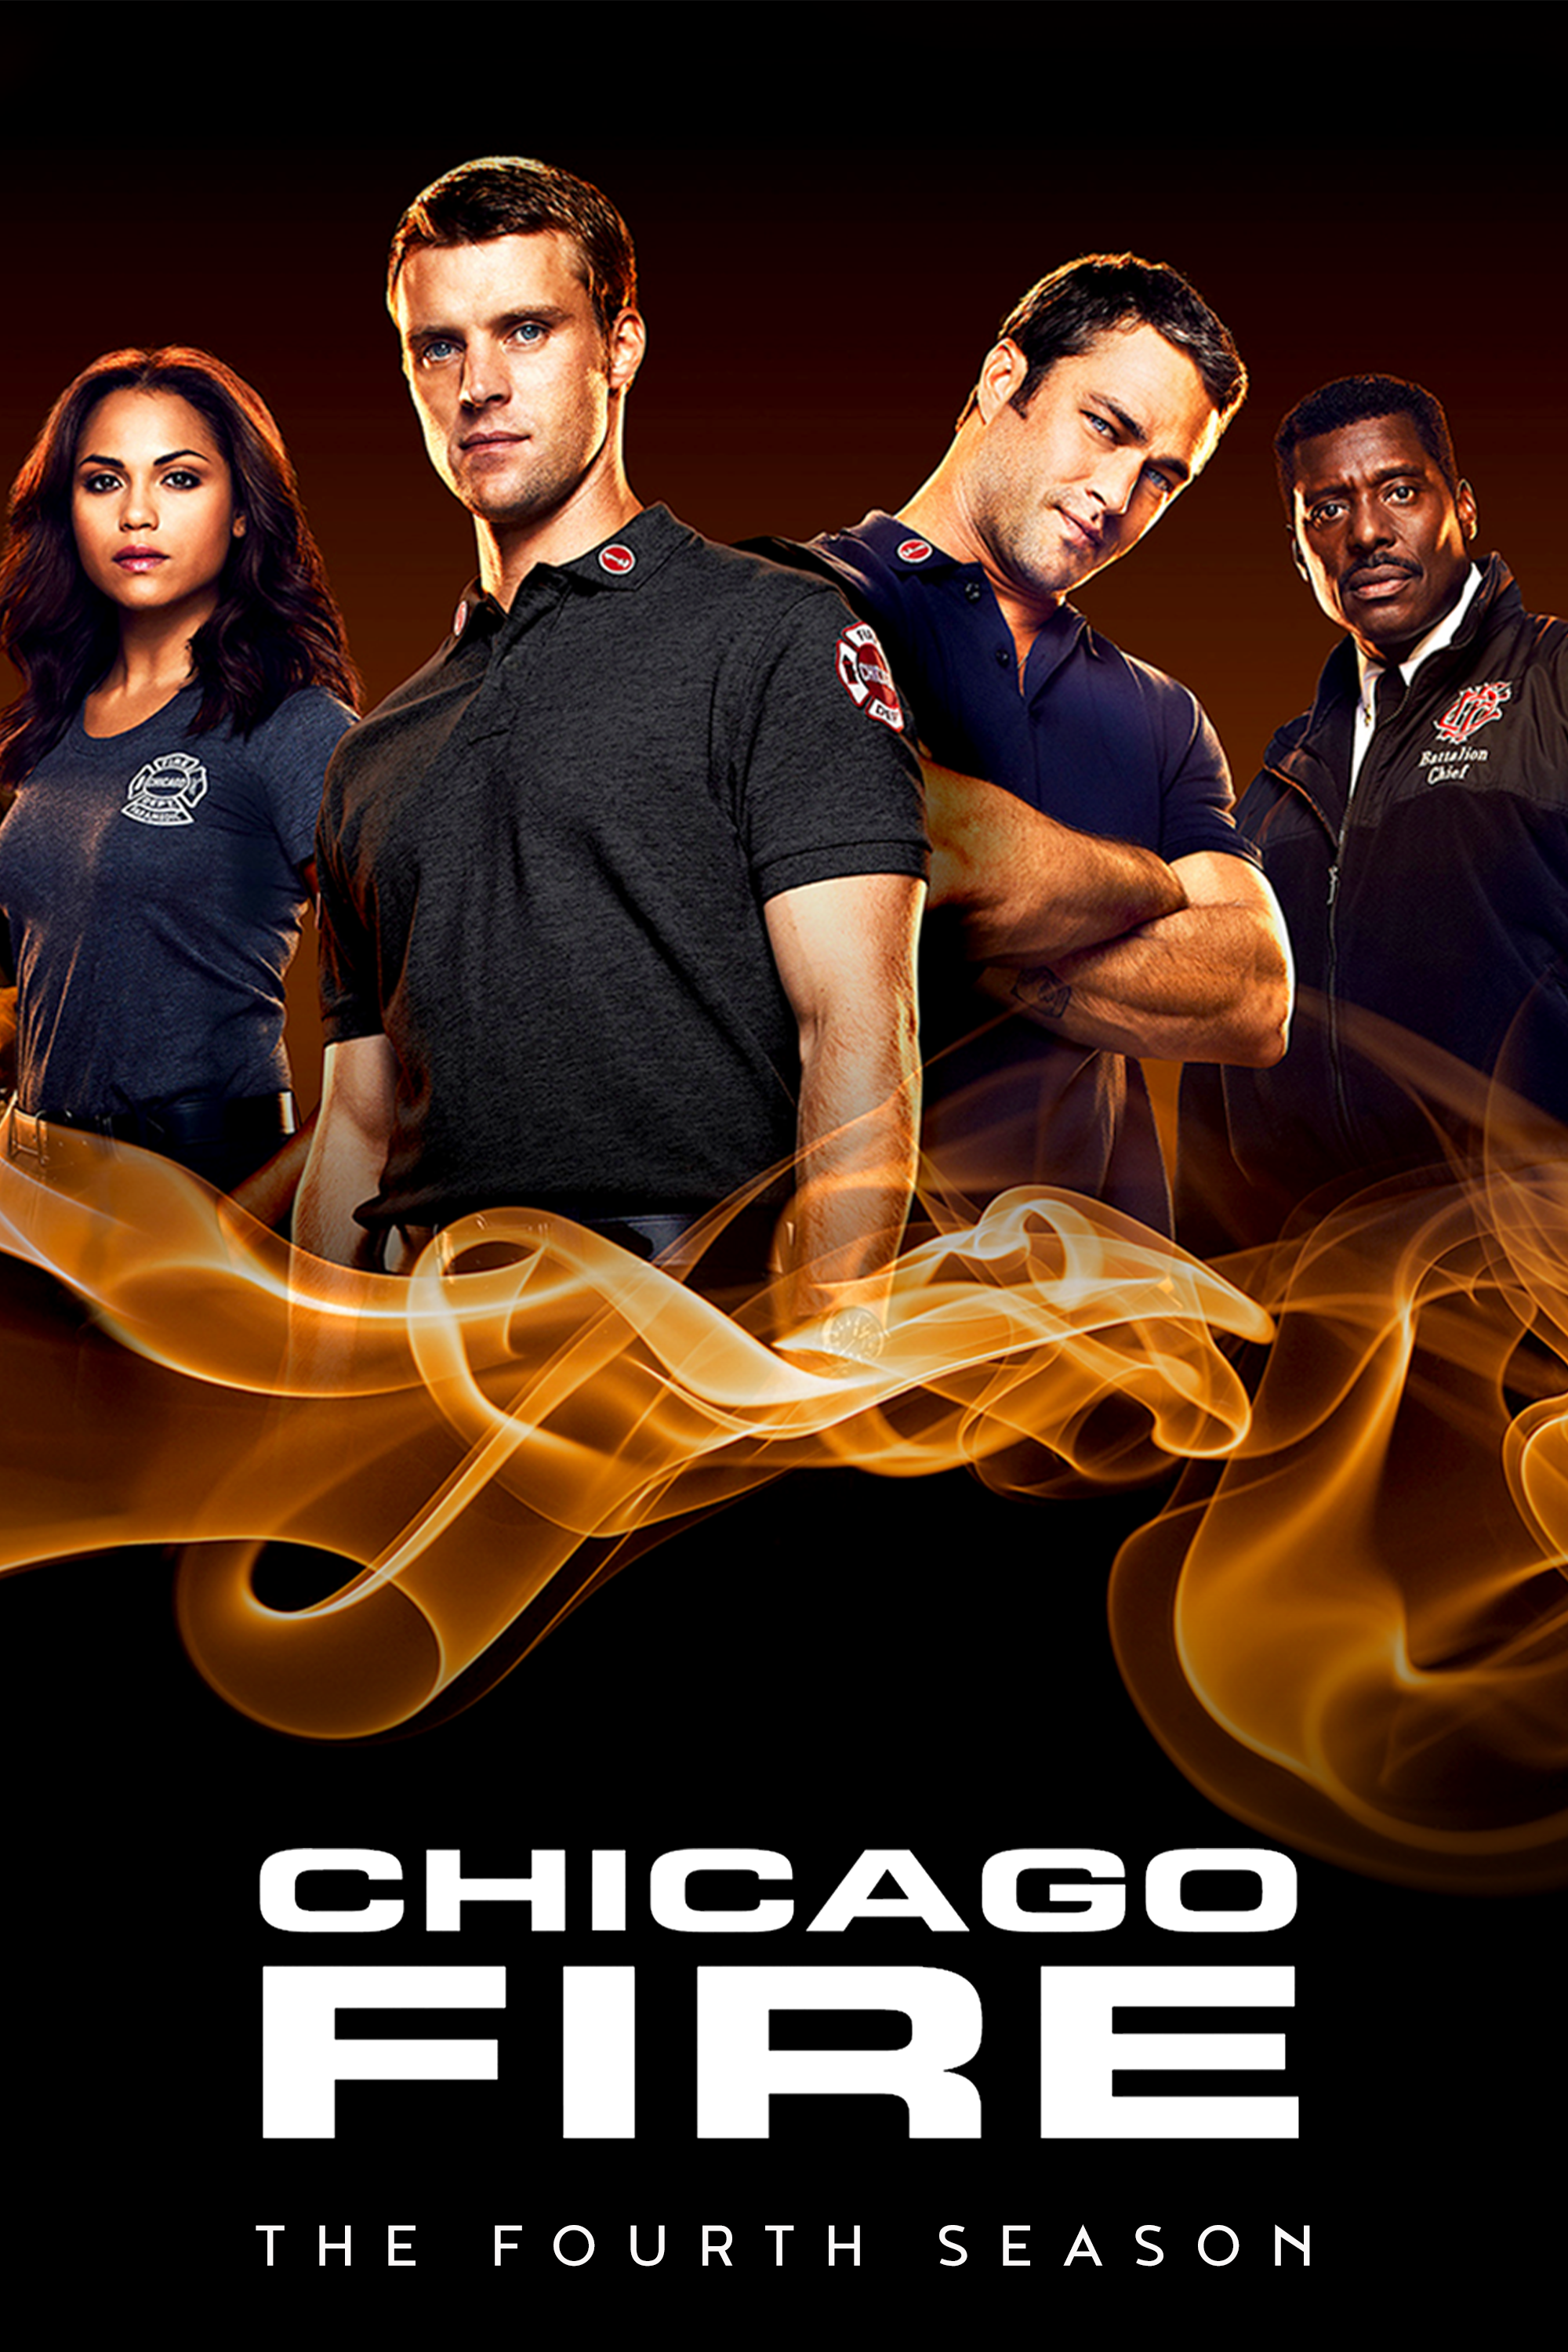 ดูหนังออนไลน์ฟรี Chicago Fire Season 4 EP.17 ชิคาโก้ ไฟร์ หน่วยดับเพลิงท้านรก ซีซั่นที่ 4 ตอนที่ 17